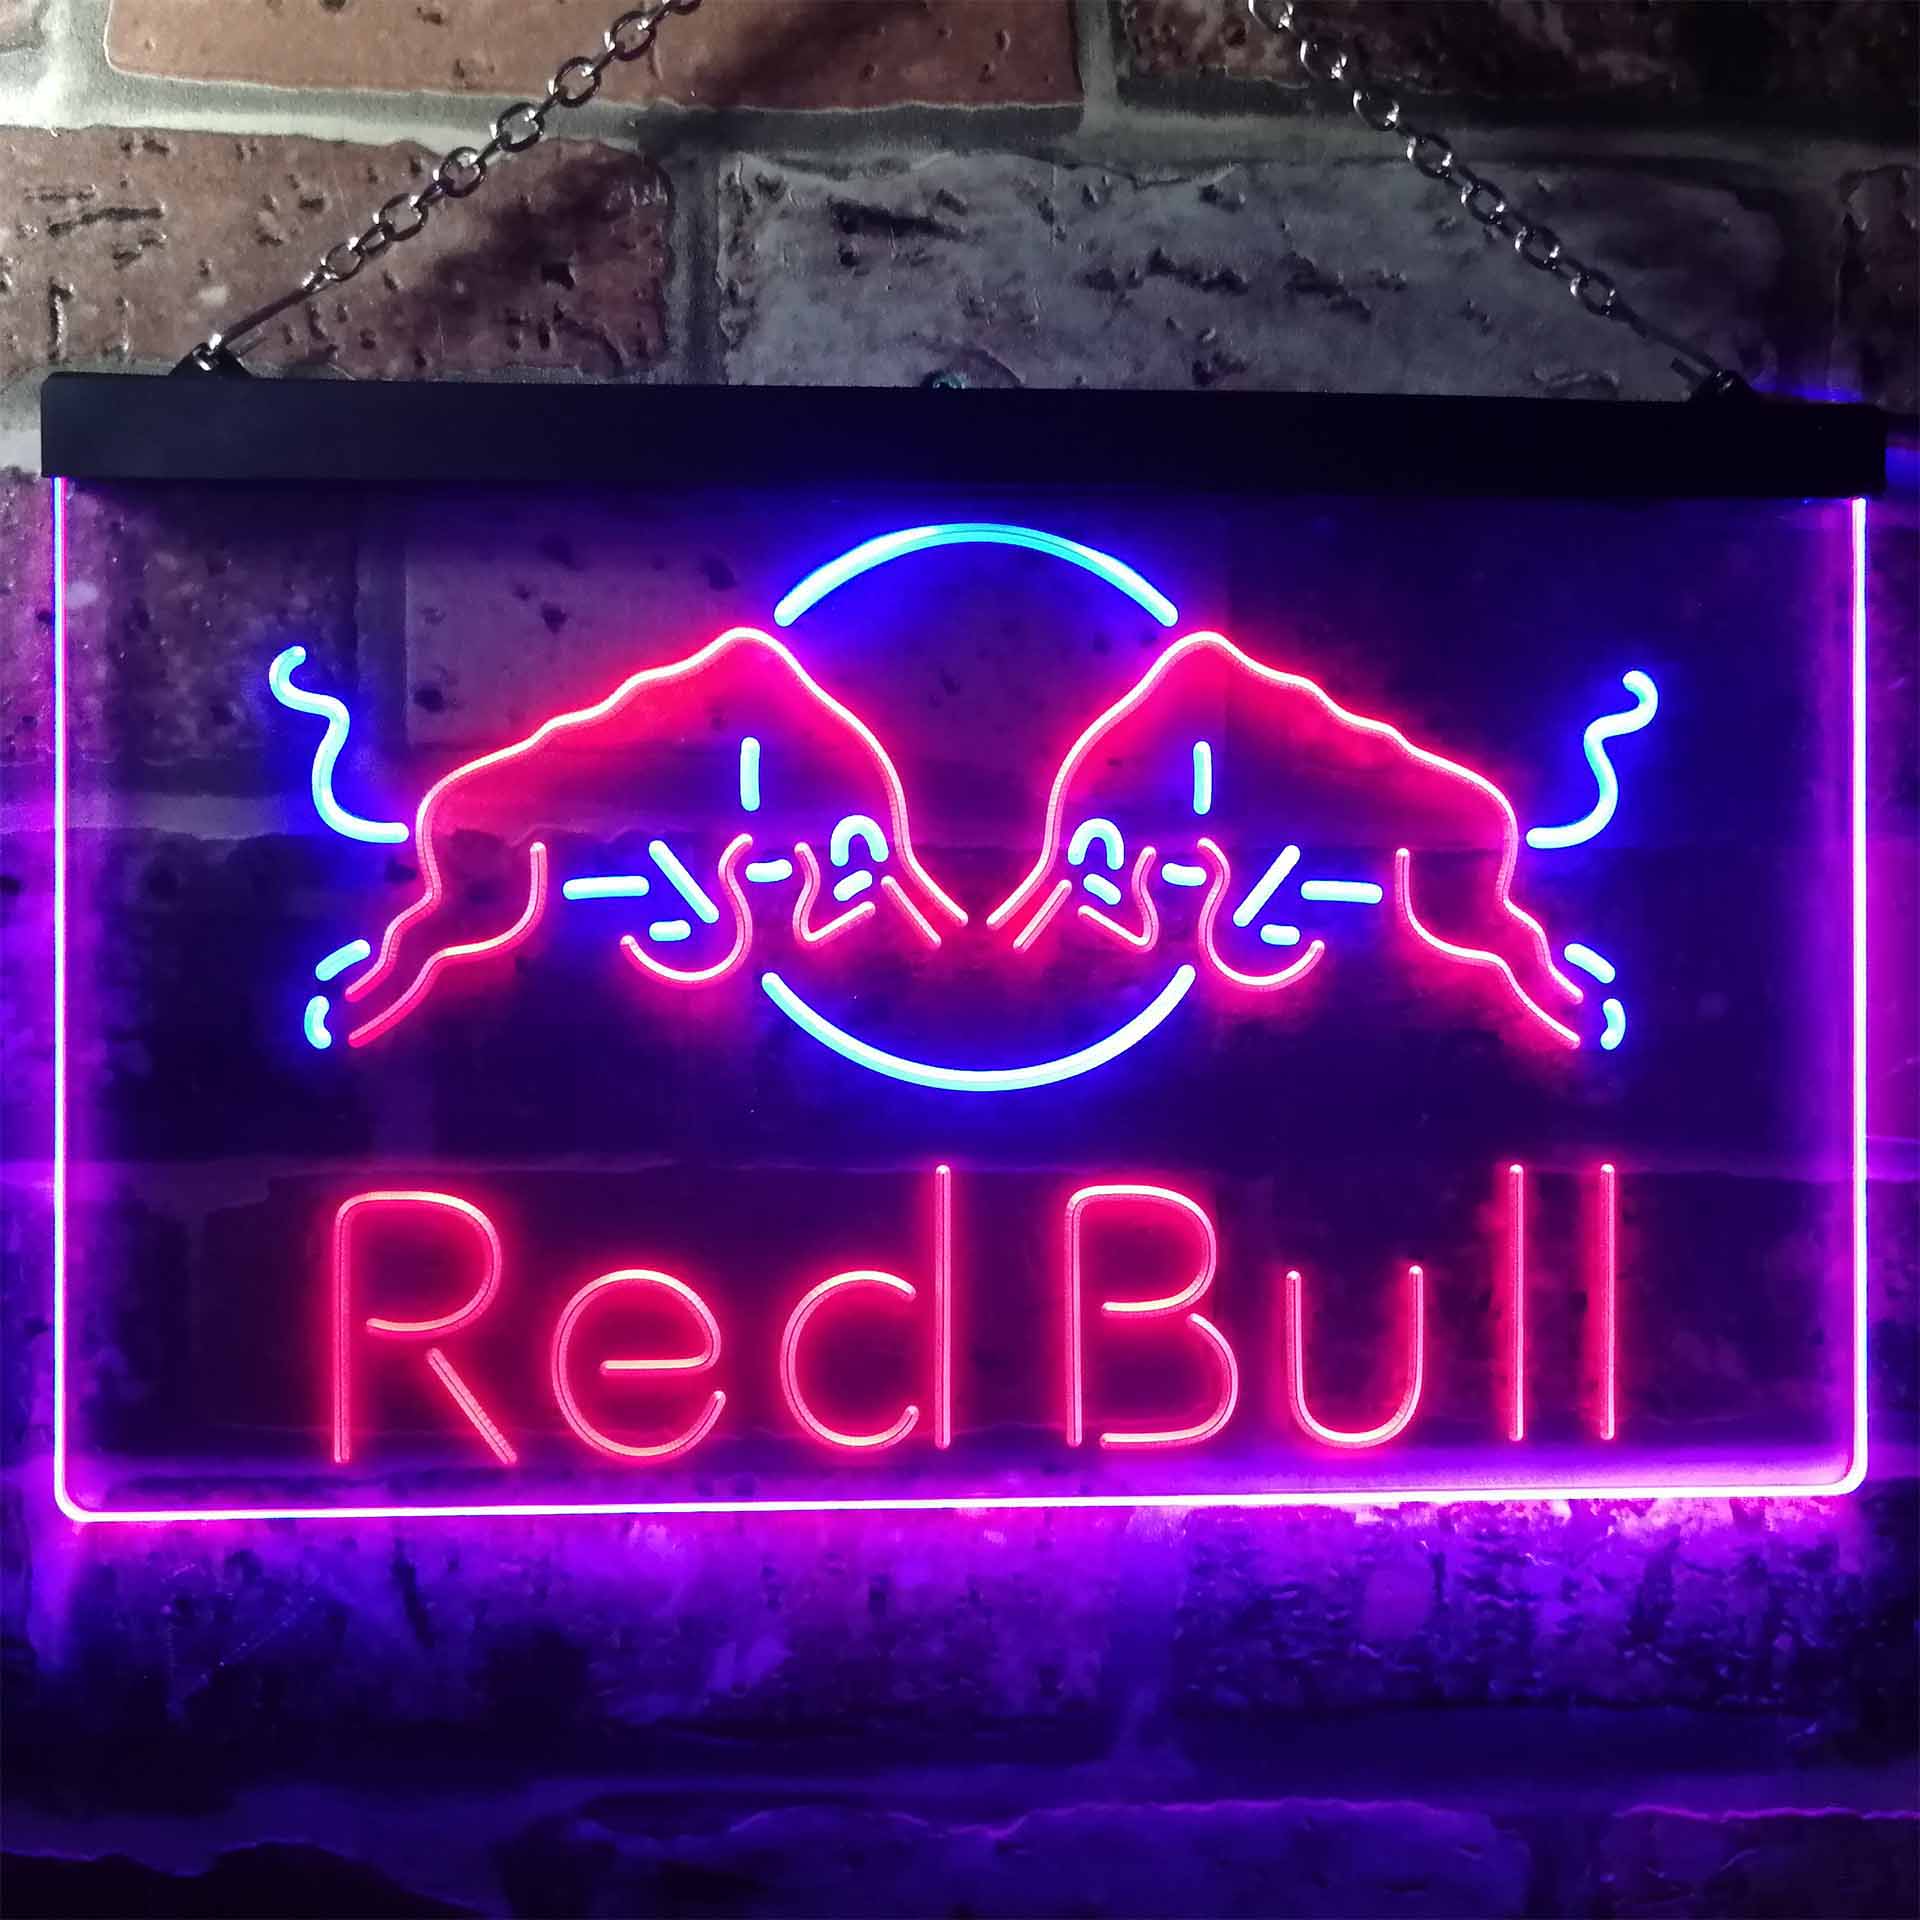 Red Bull Fighting Bulls Bar Neon LED Sign